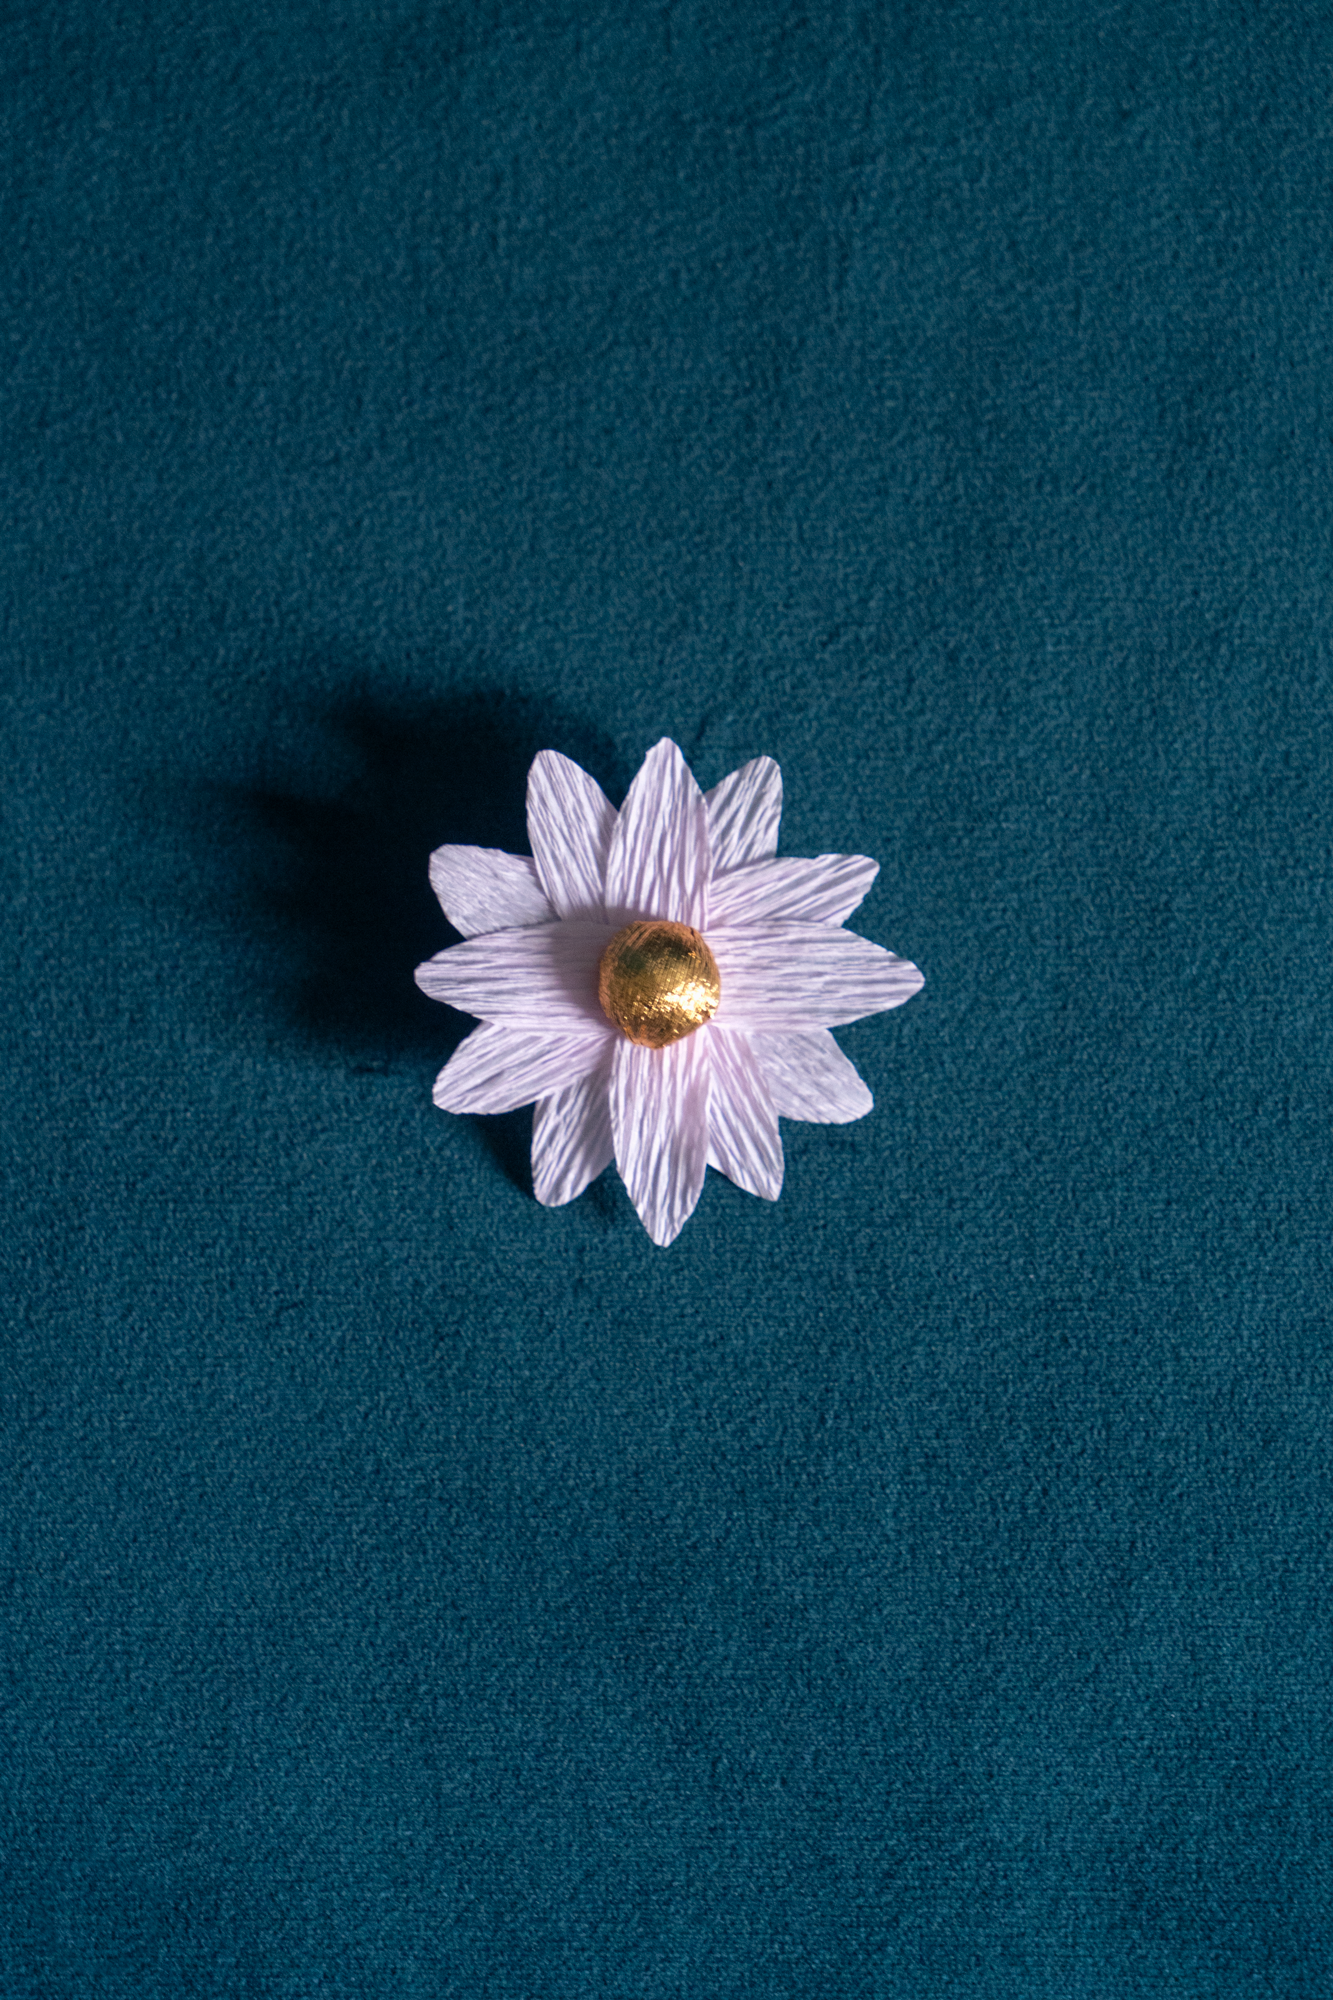 Broche Marguerite de Maison Tessier couleur Quartz violet coeur Or, sur tissus velour émeraude